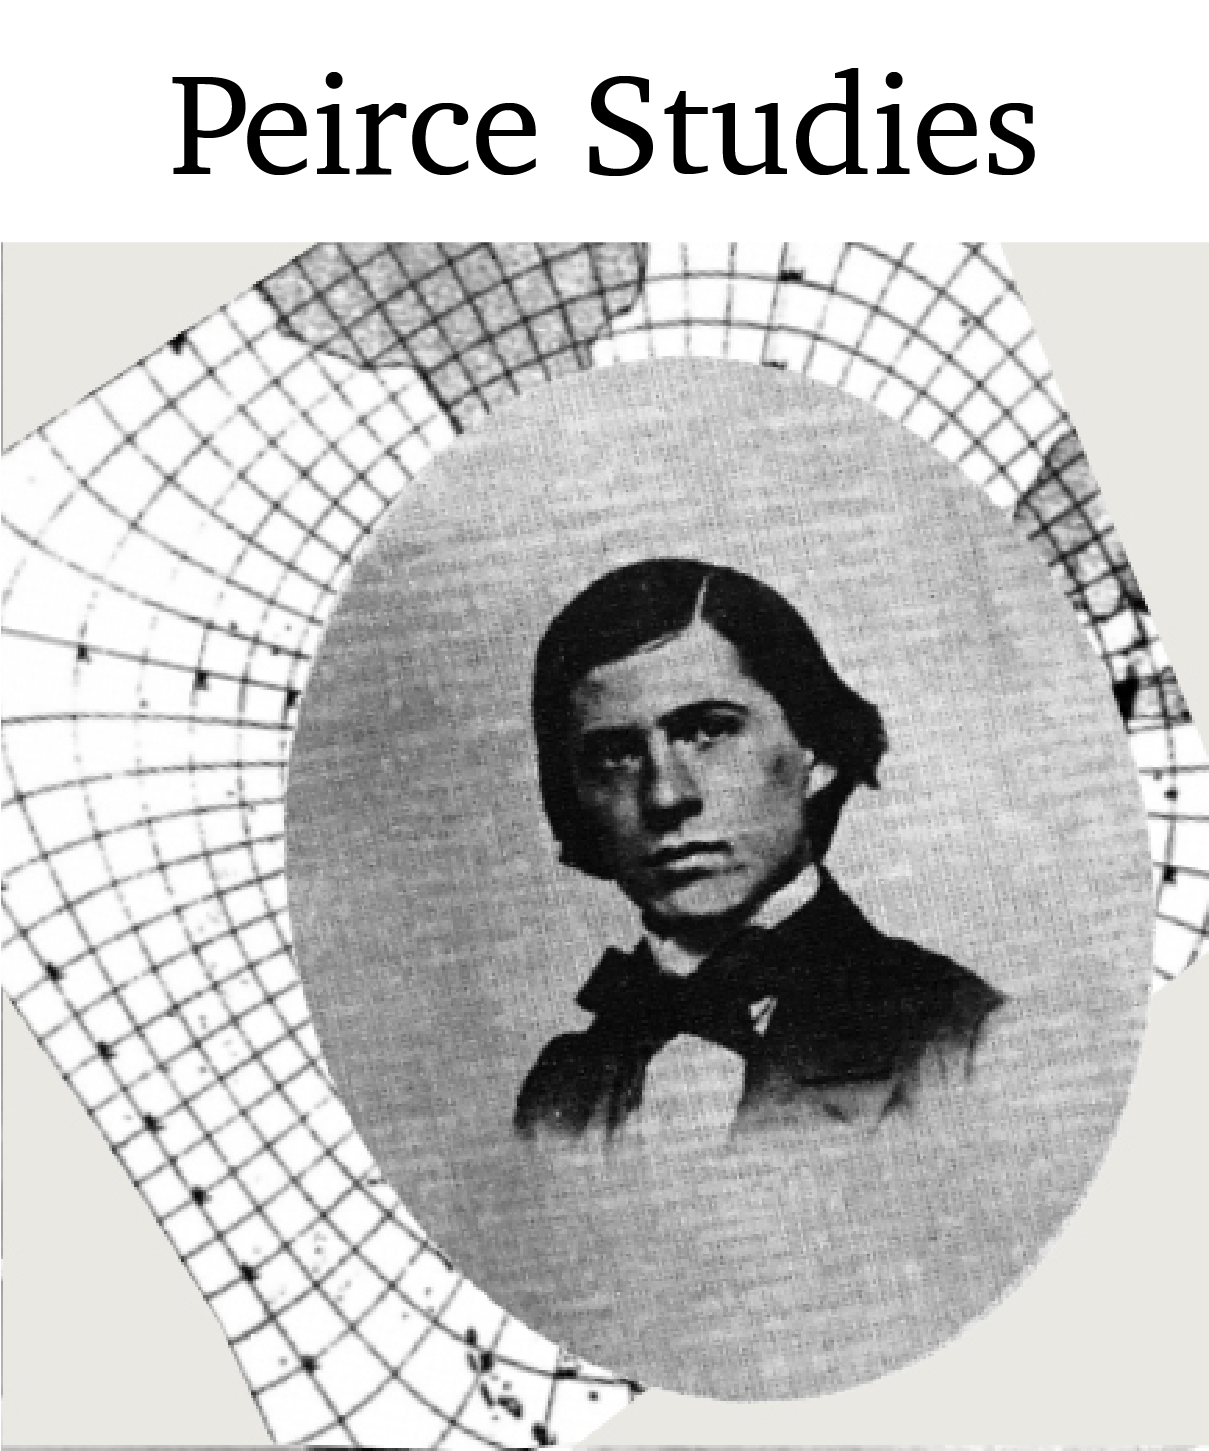 Peirce Studies